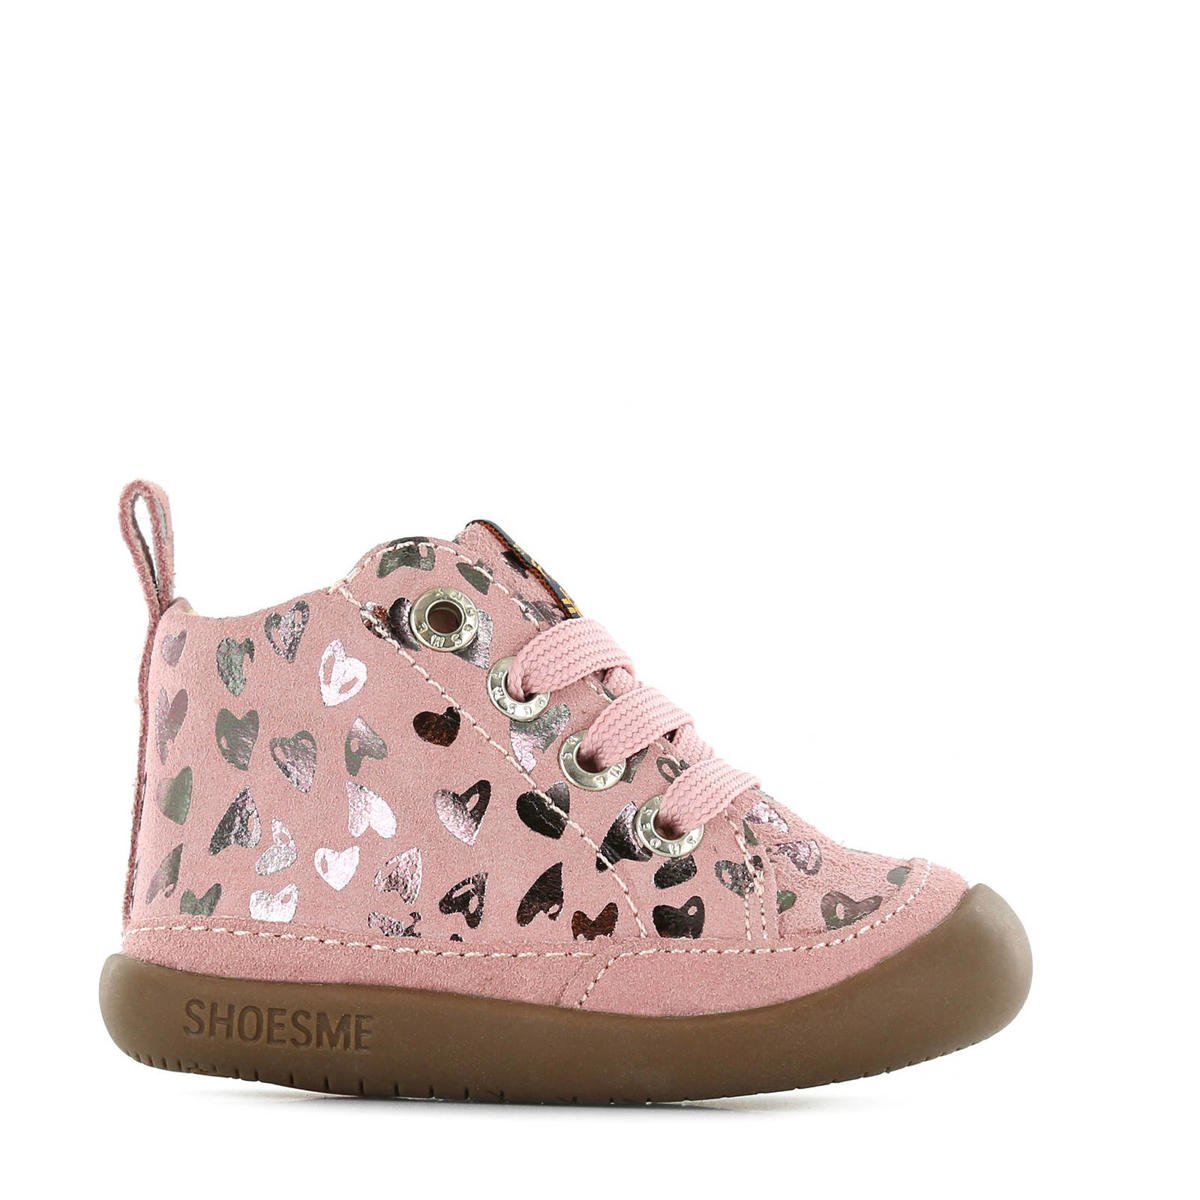 Shoesme BF20W005-B babyschoenen roze/zilver | wehkamp